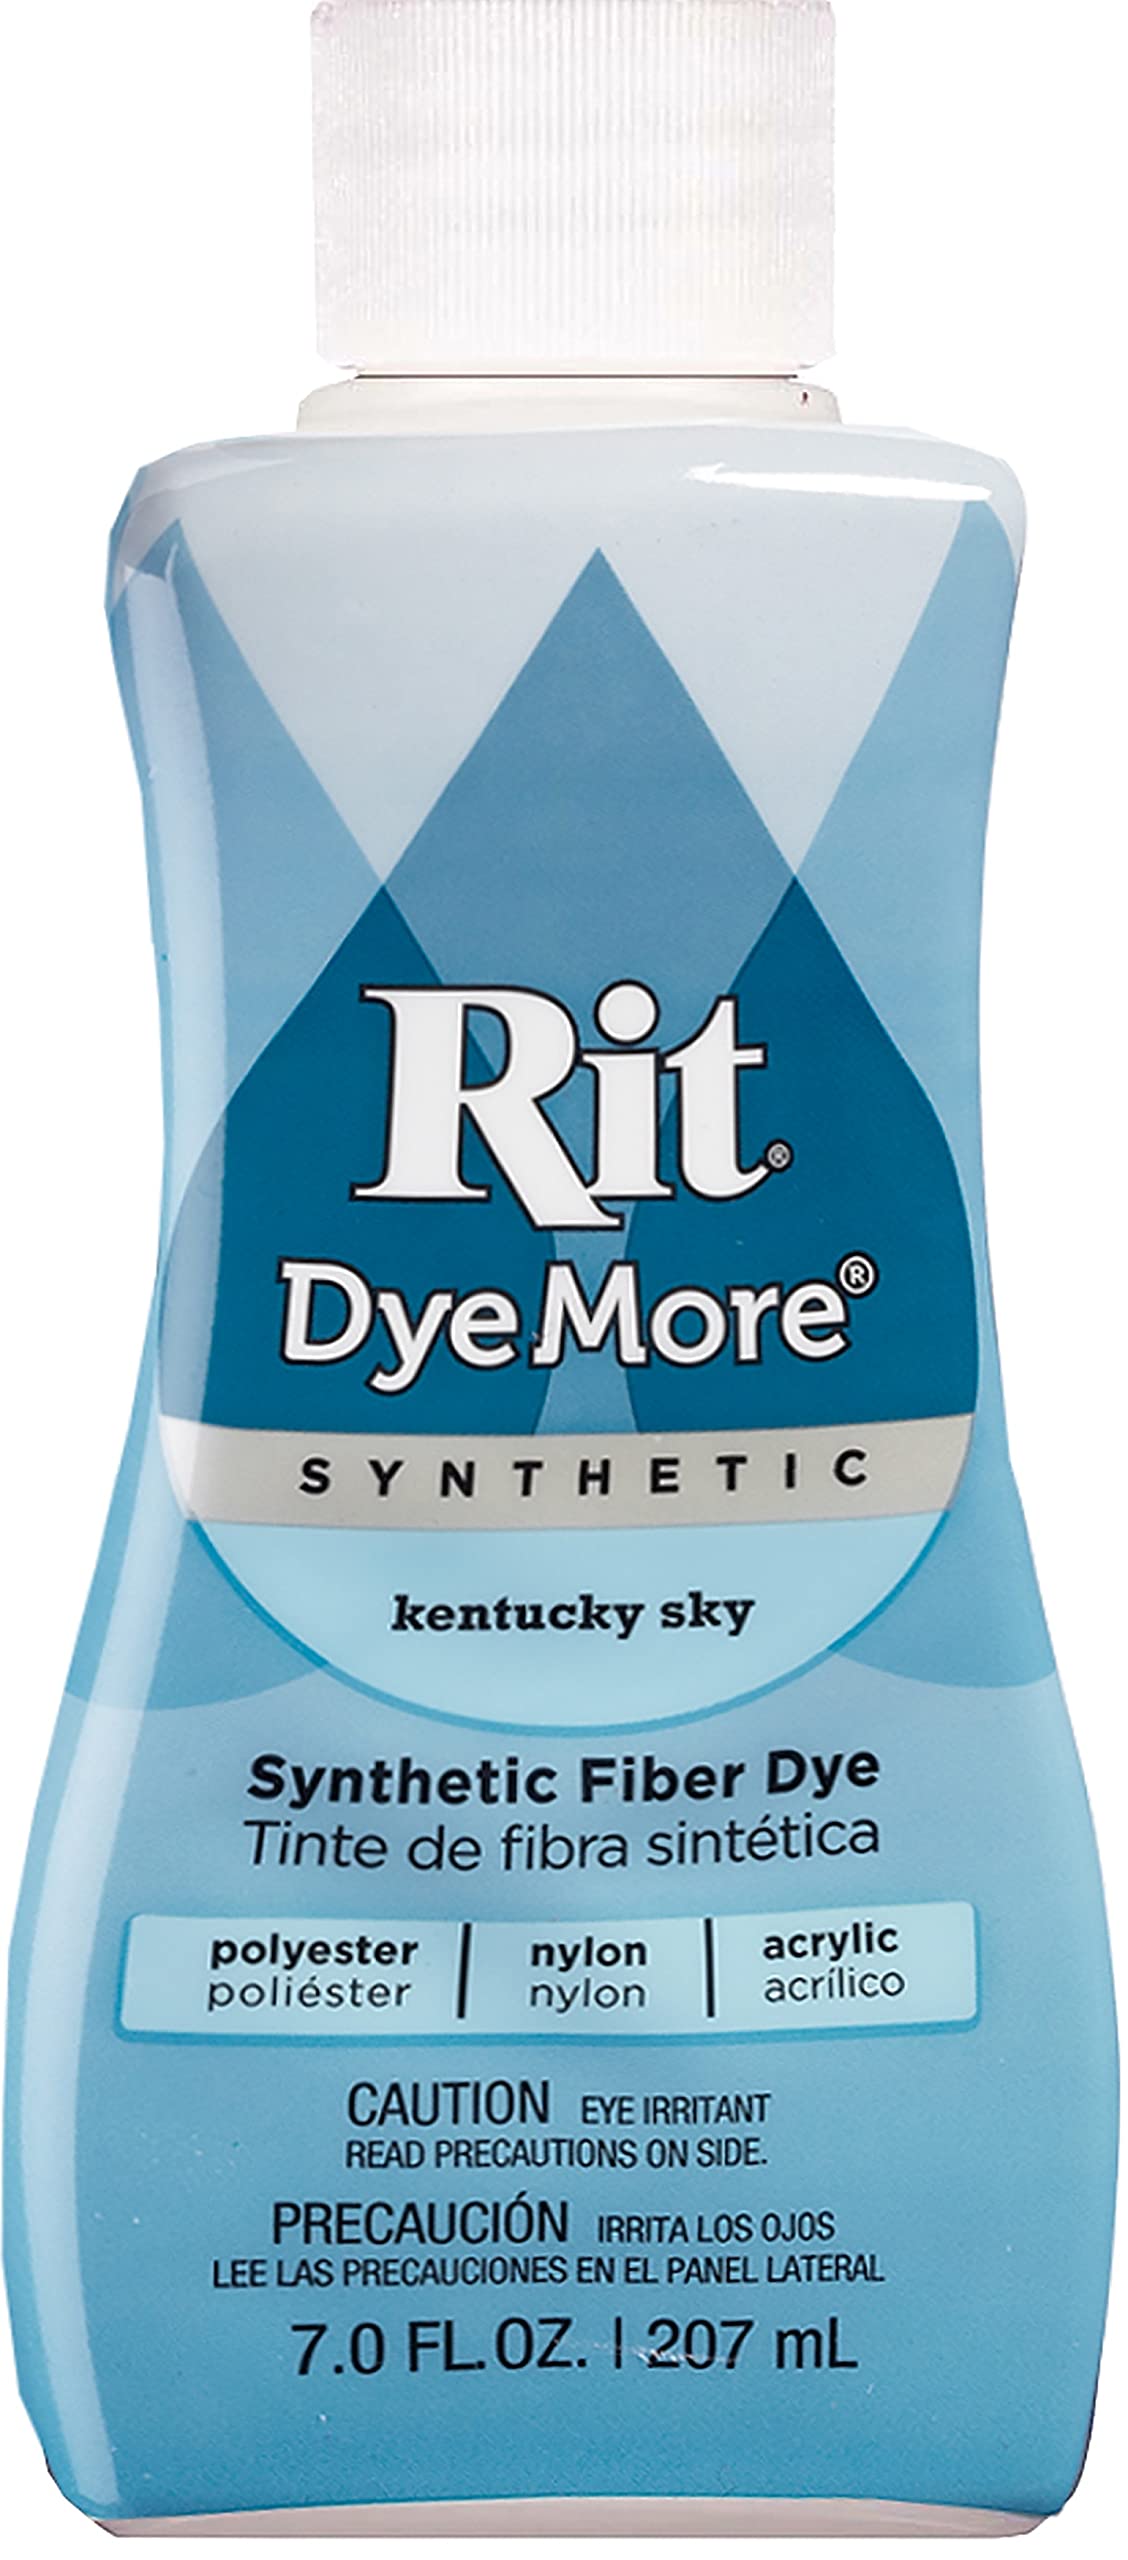 Dye More' Rit Dye for Synthetics